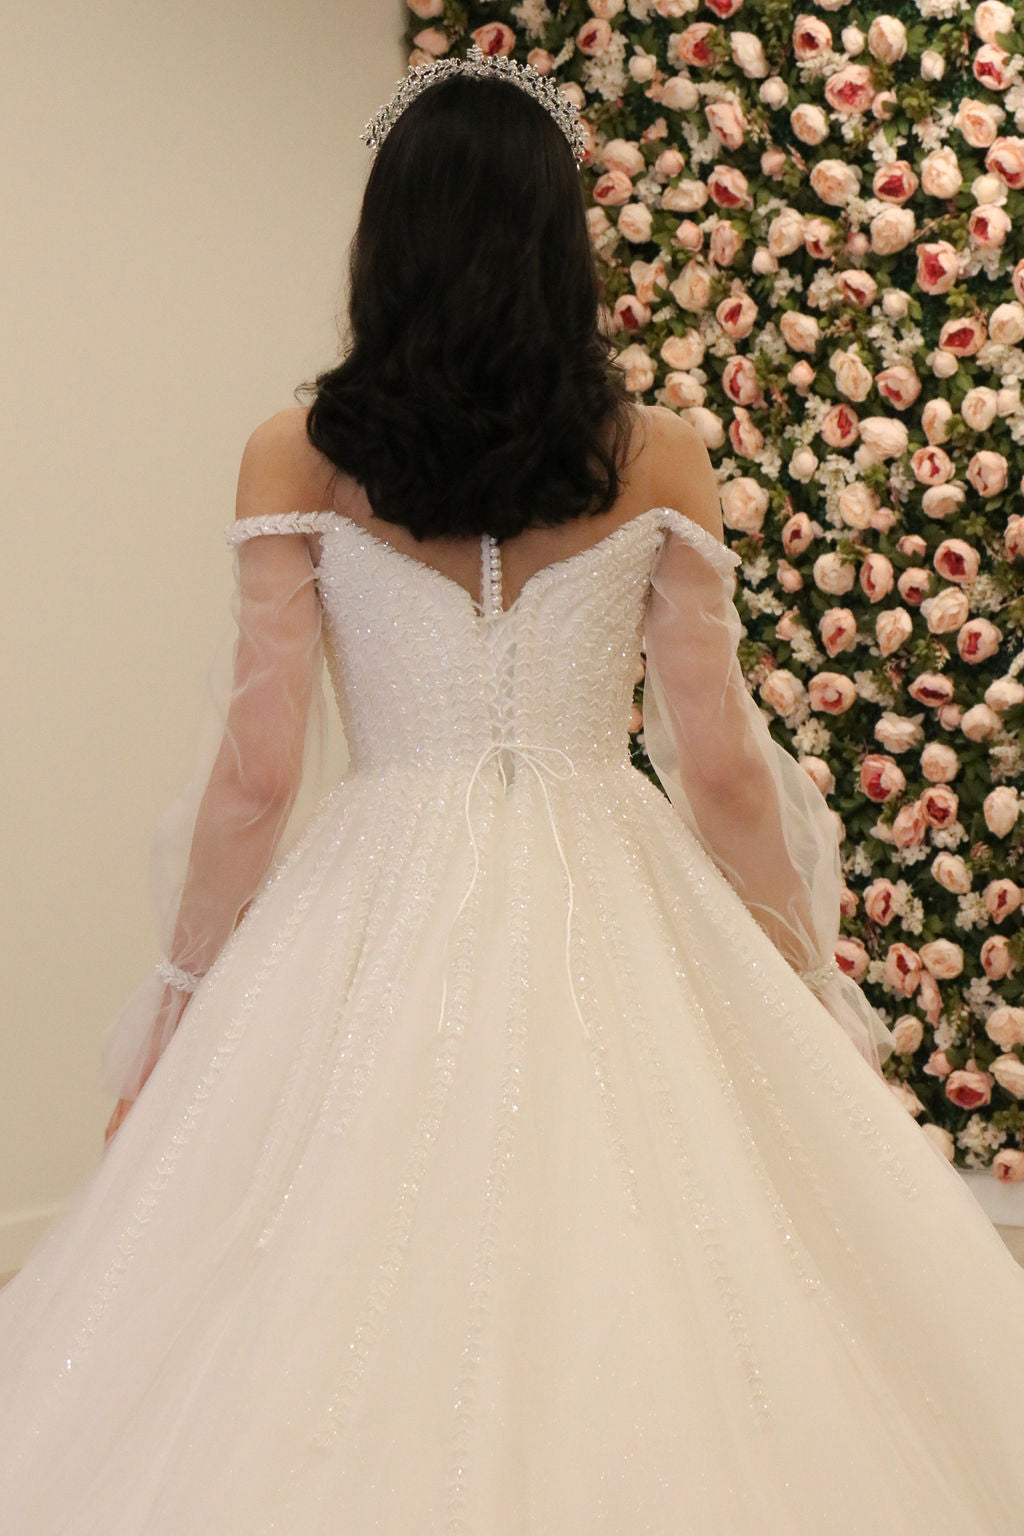 White ball gown princess dress